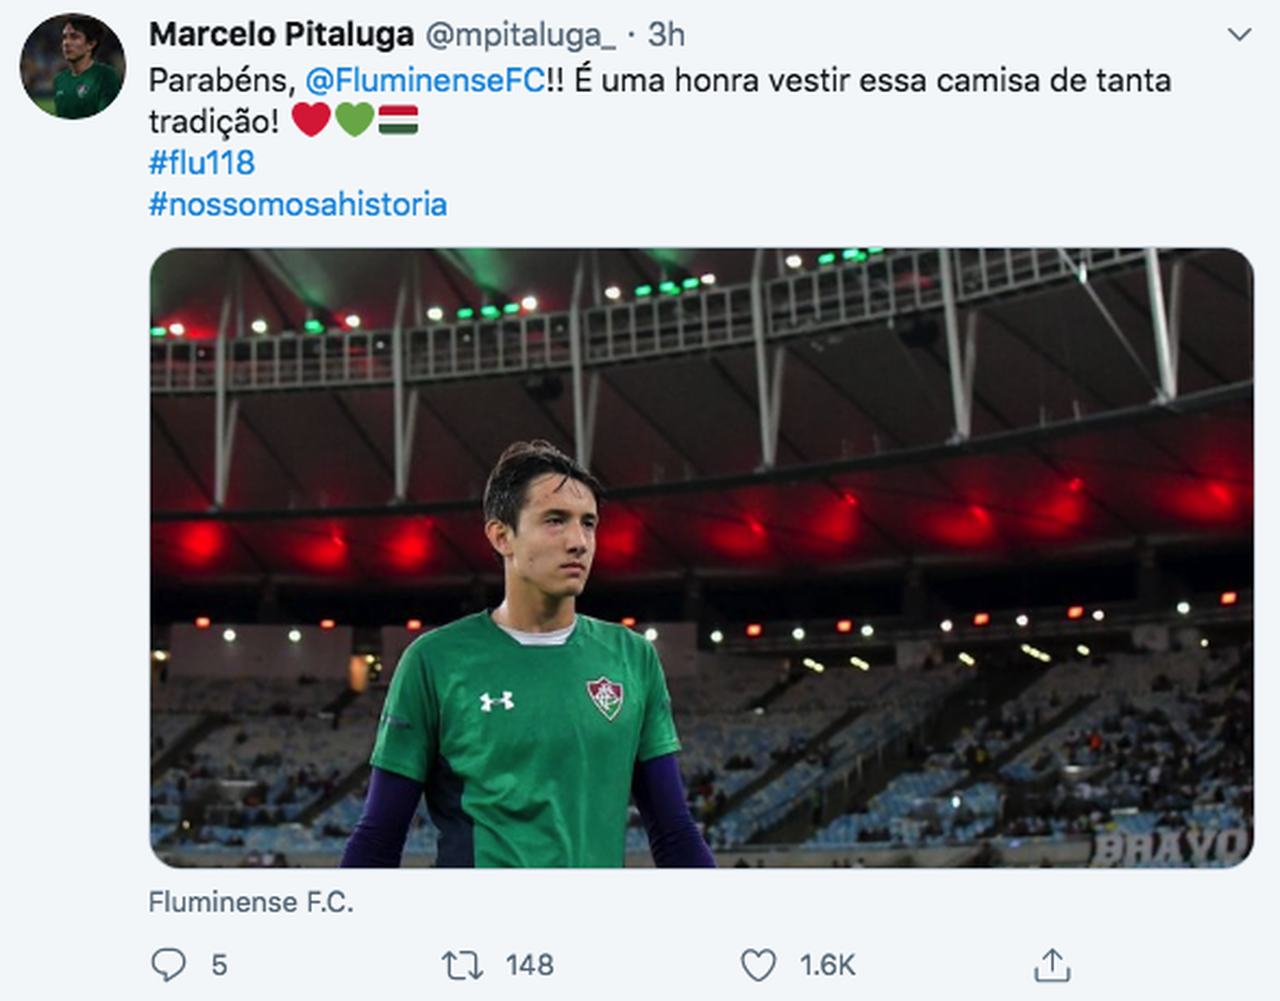 Cria do Fluminense, o jovem goleiro Marcelo Pitaluga também deu os parabéns ao Fluminense.